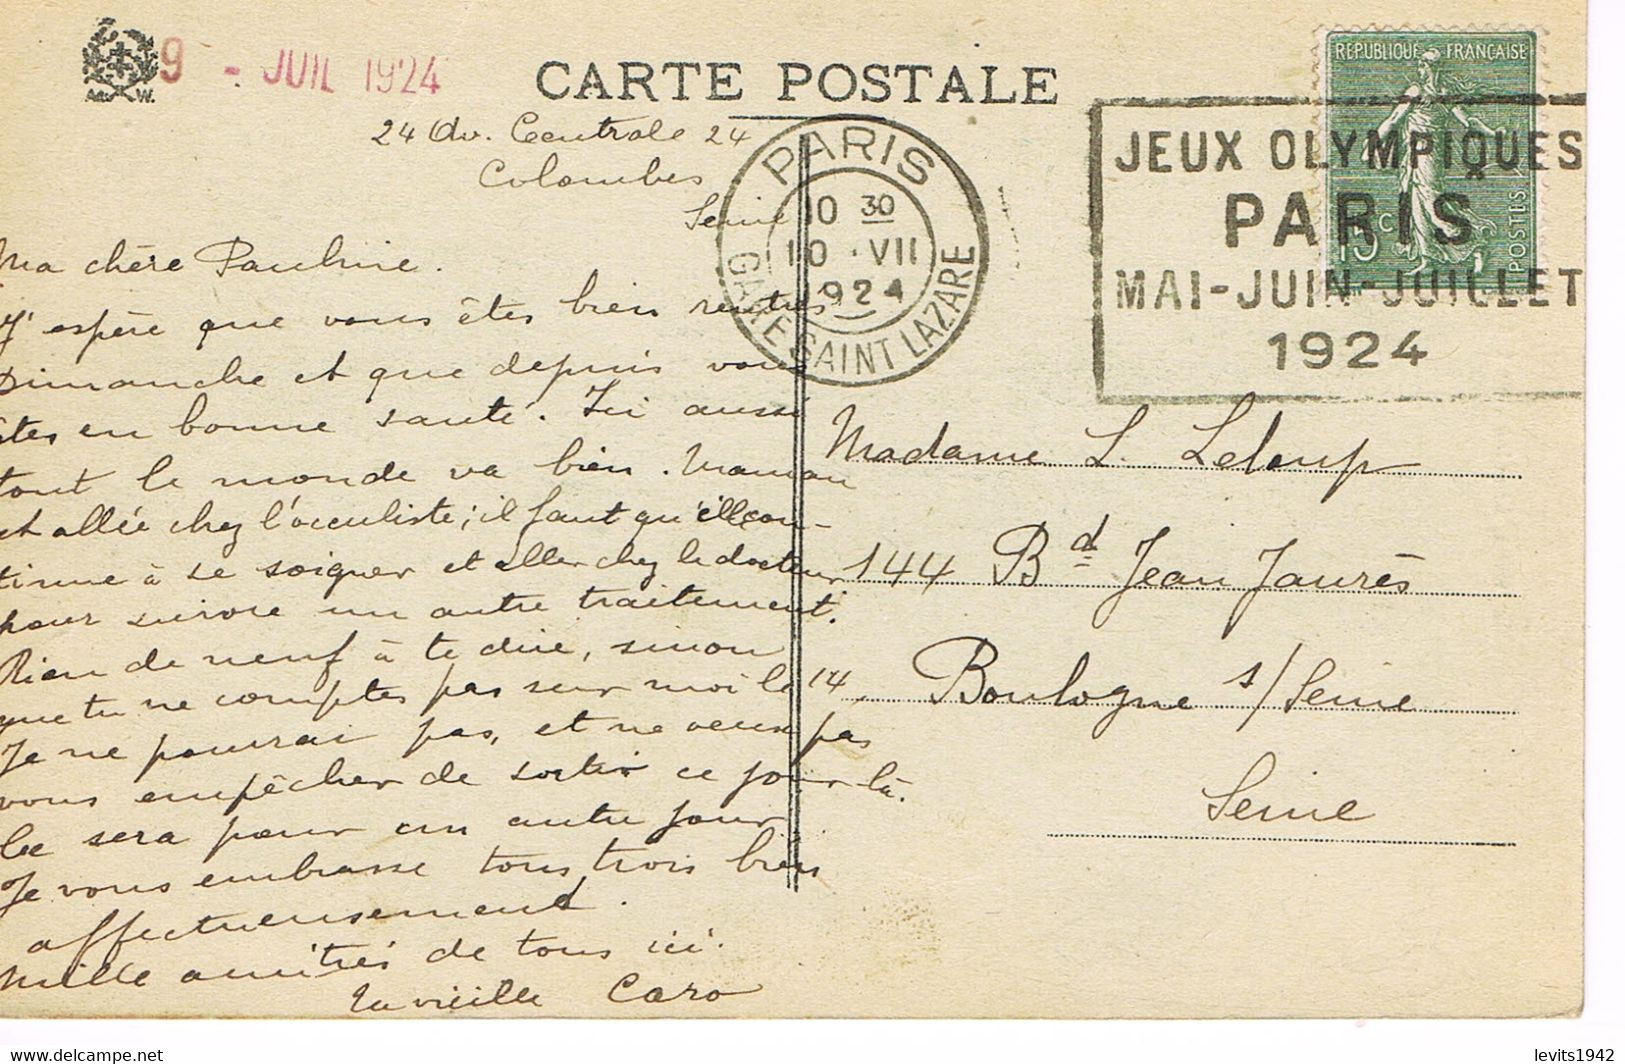 JEUX OLYMPIQUES 1924 -  MARQUE POSTALE - ESCRIME - POLO - ATHLETISME - LUTTE - JOUR DE COMPETITION - 10-07 - - Sommer 1924: Paris